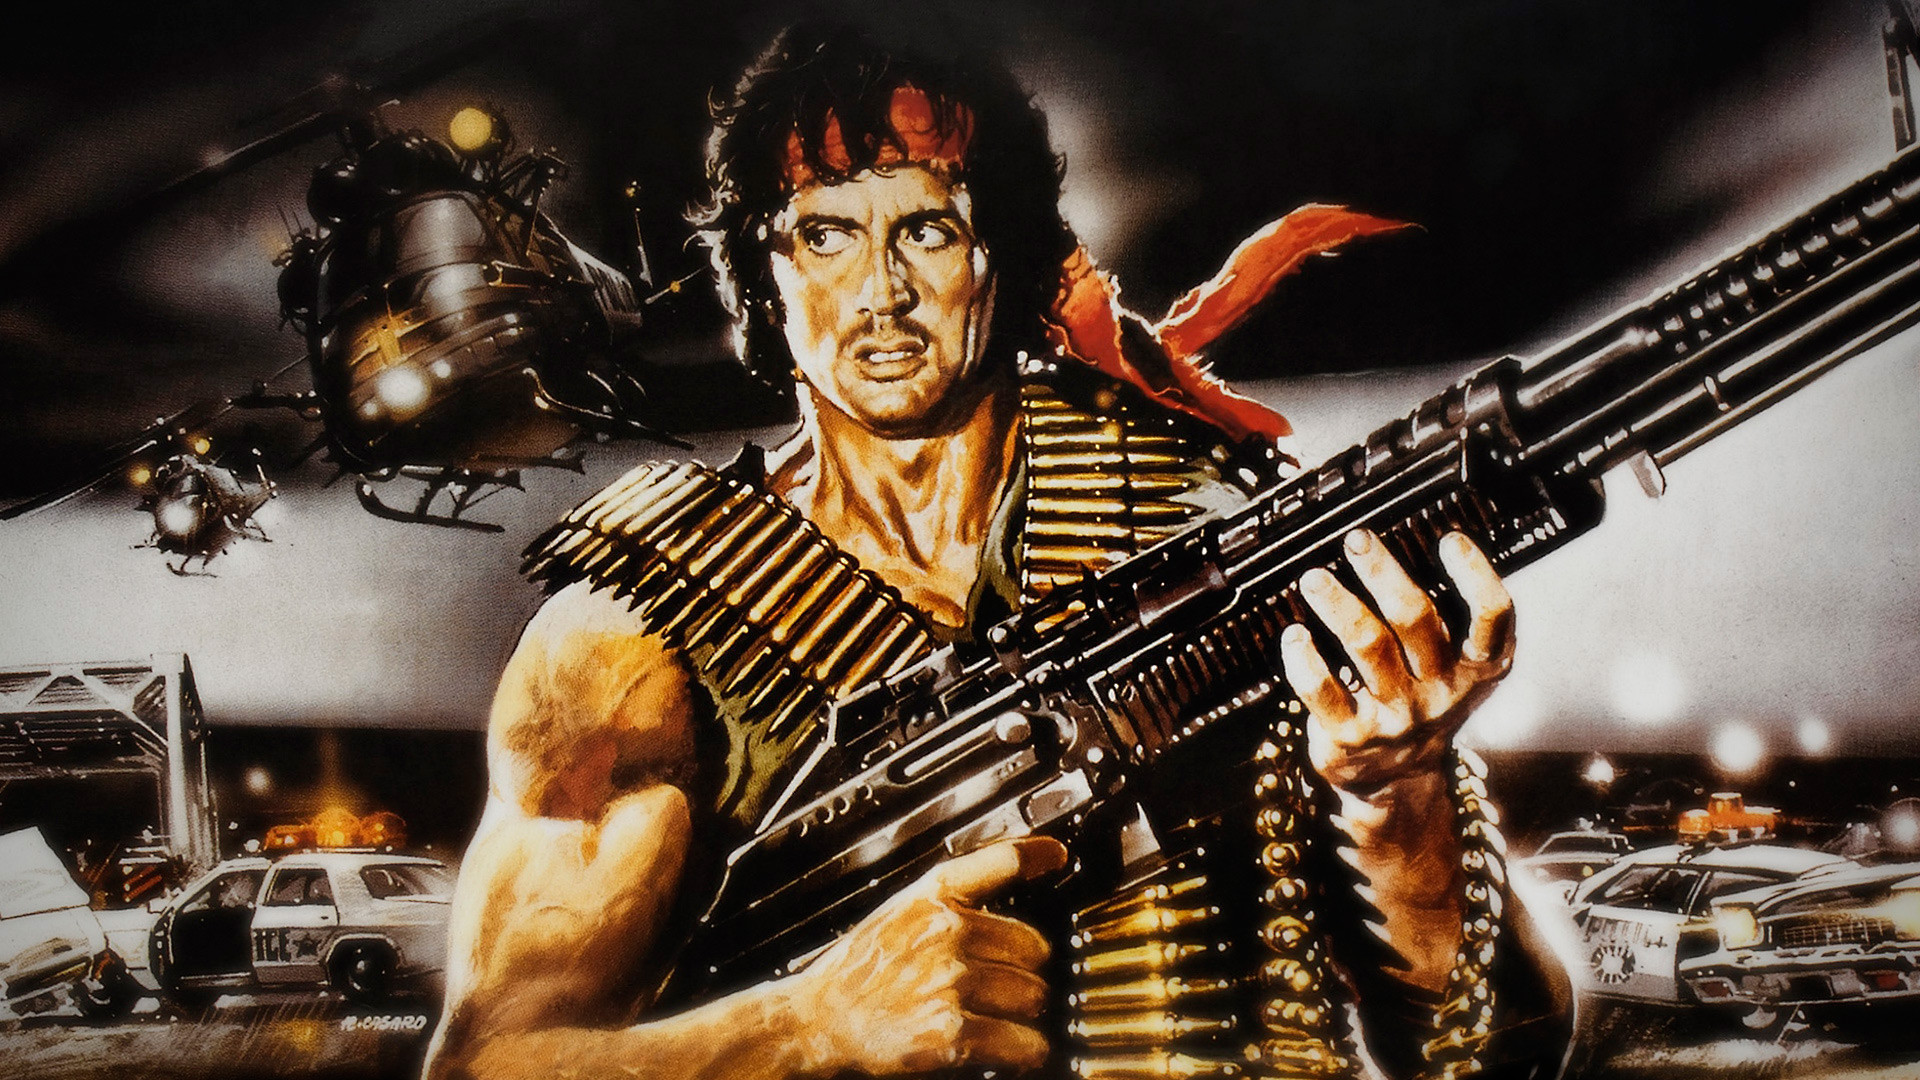 Rambo 5 a Expendables 4: Kdy a kde se bude točit | Fandíme filmu